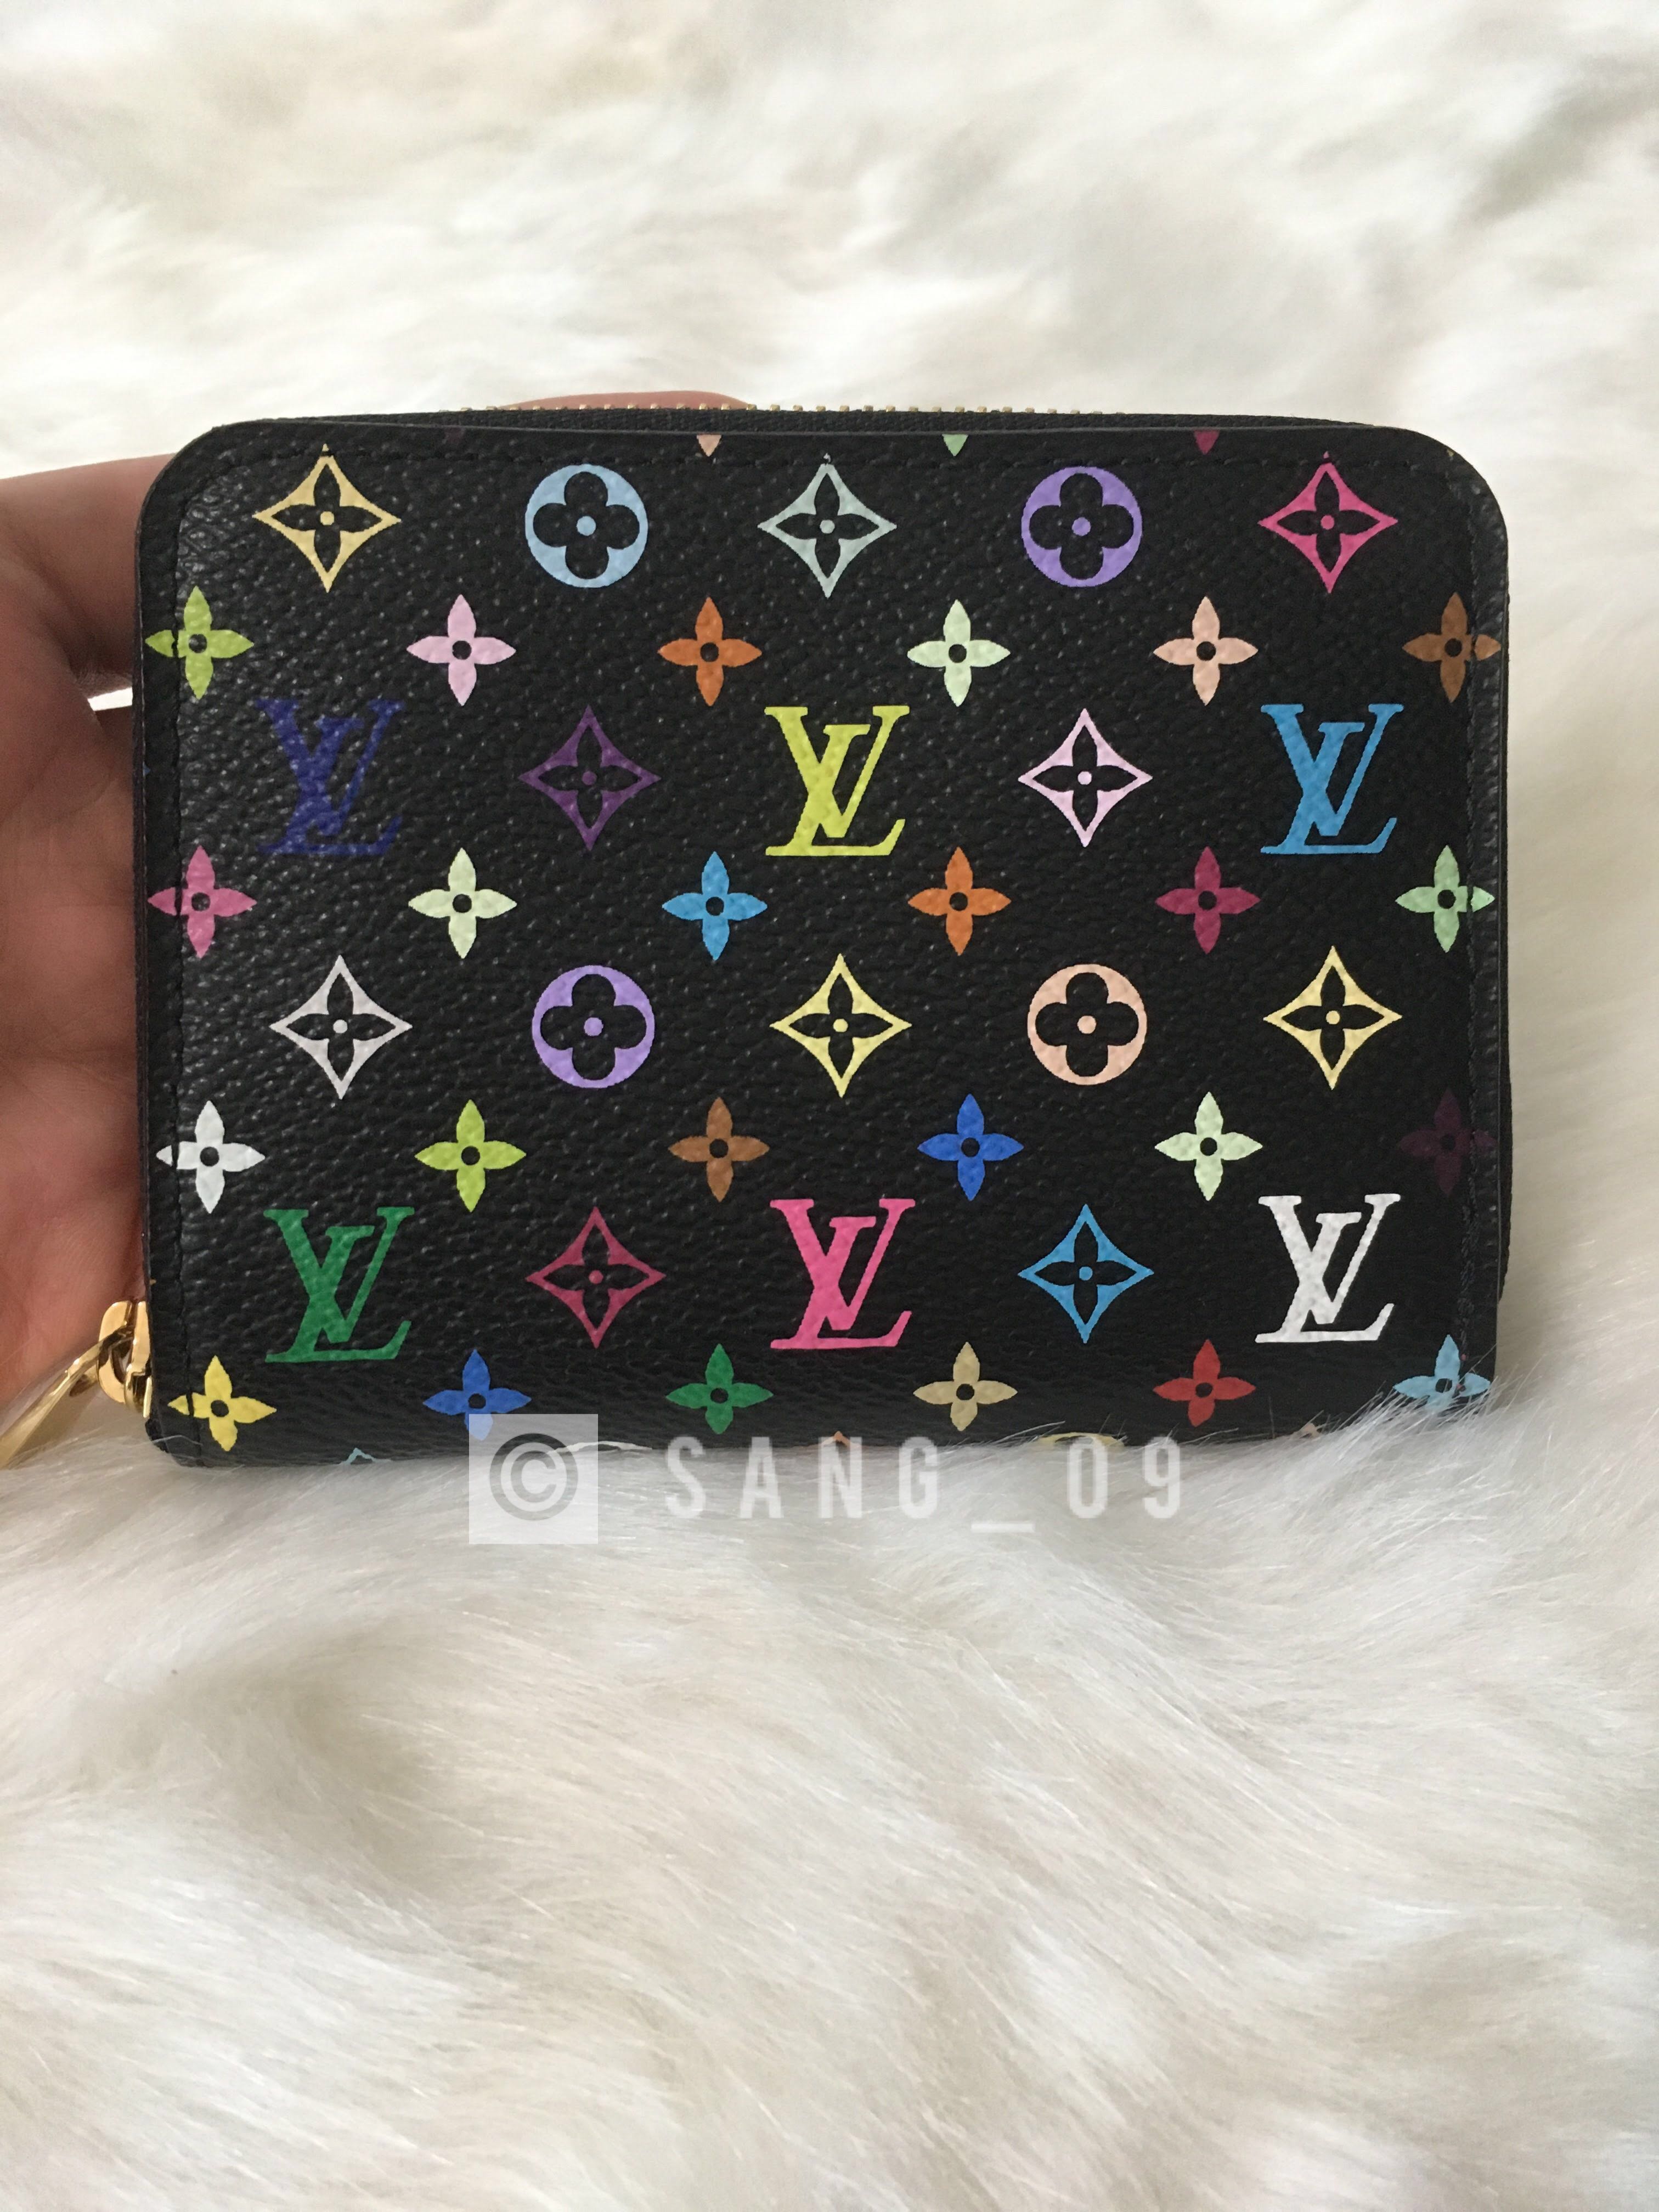 Unboxing - Louis Vuitton Multicolor Zippy Coin Purse/wallet 